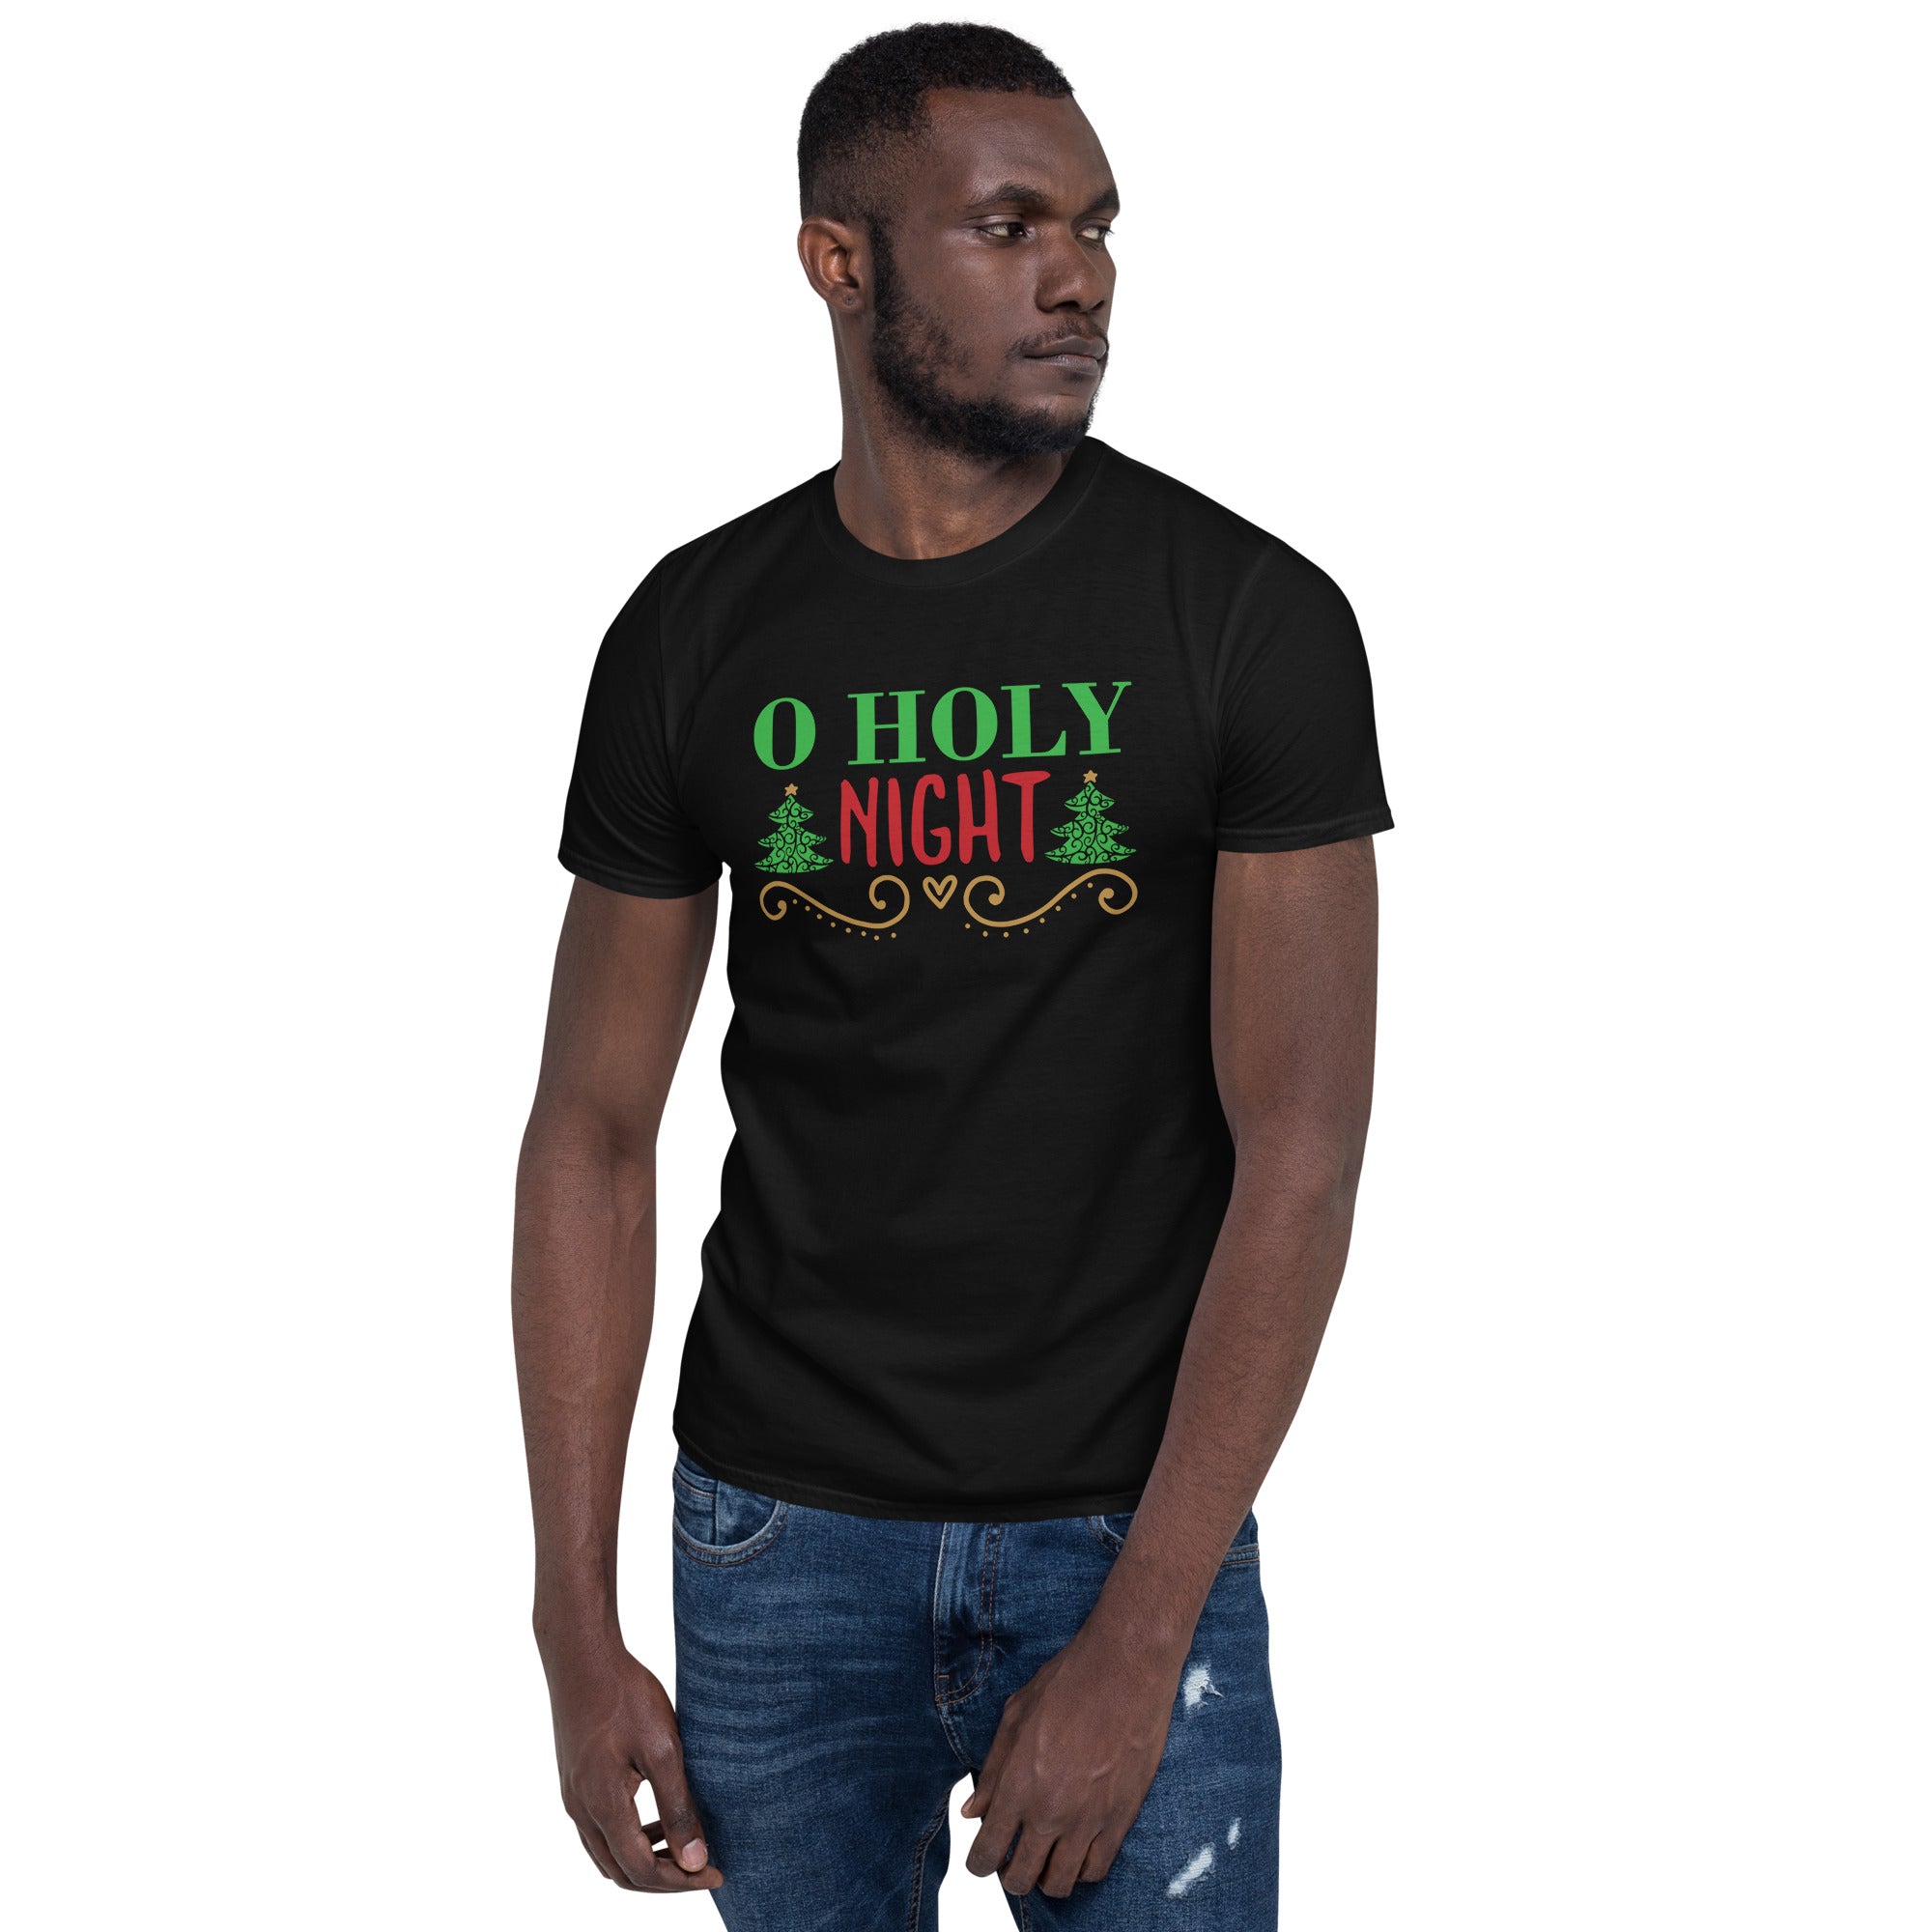 O Holy Night - Short-Sleeve Unisex T-Shirt